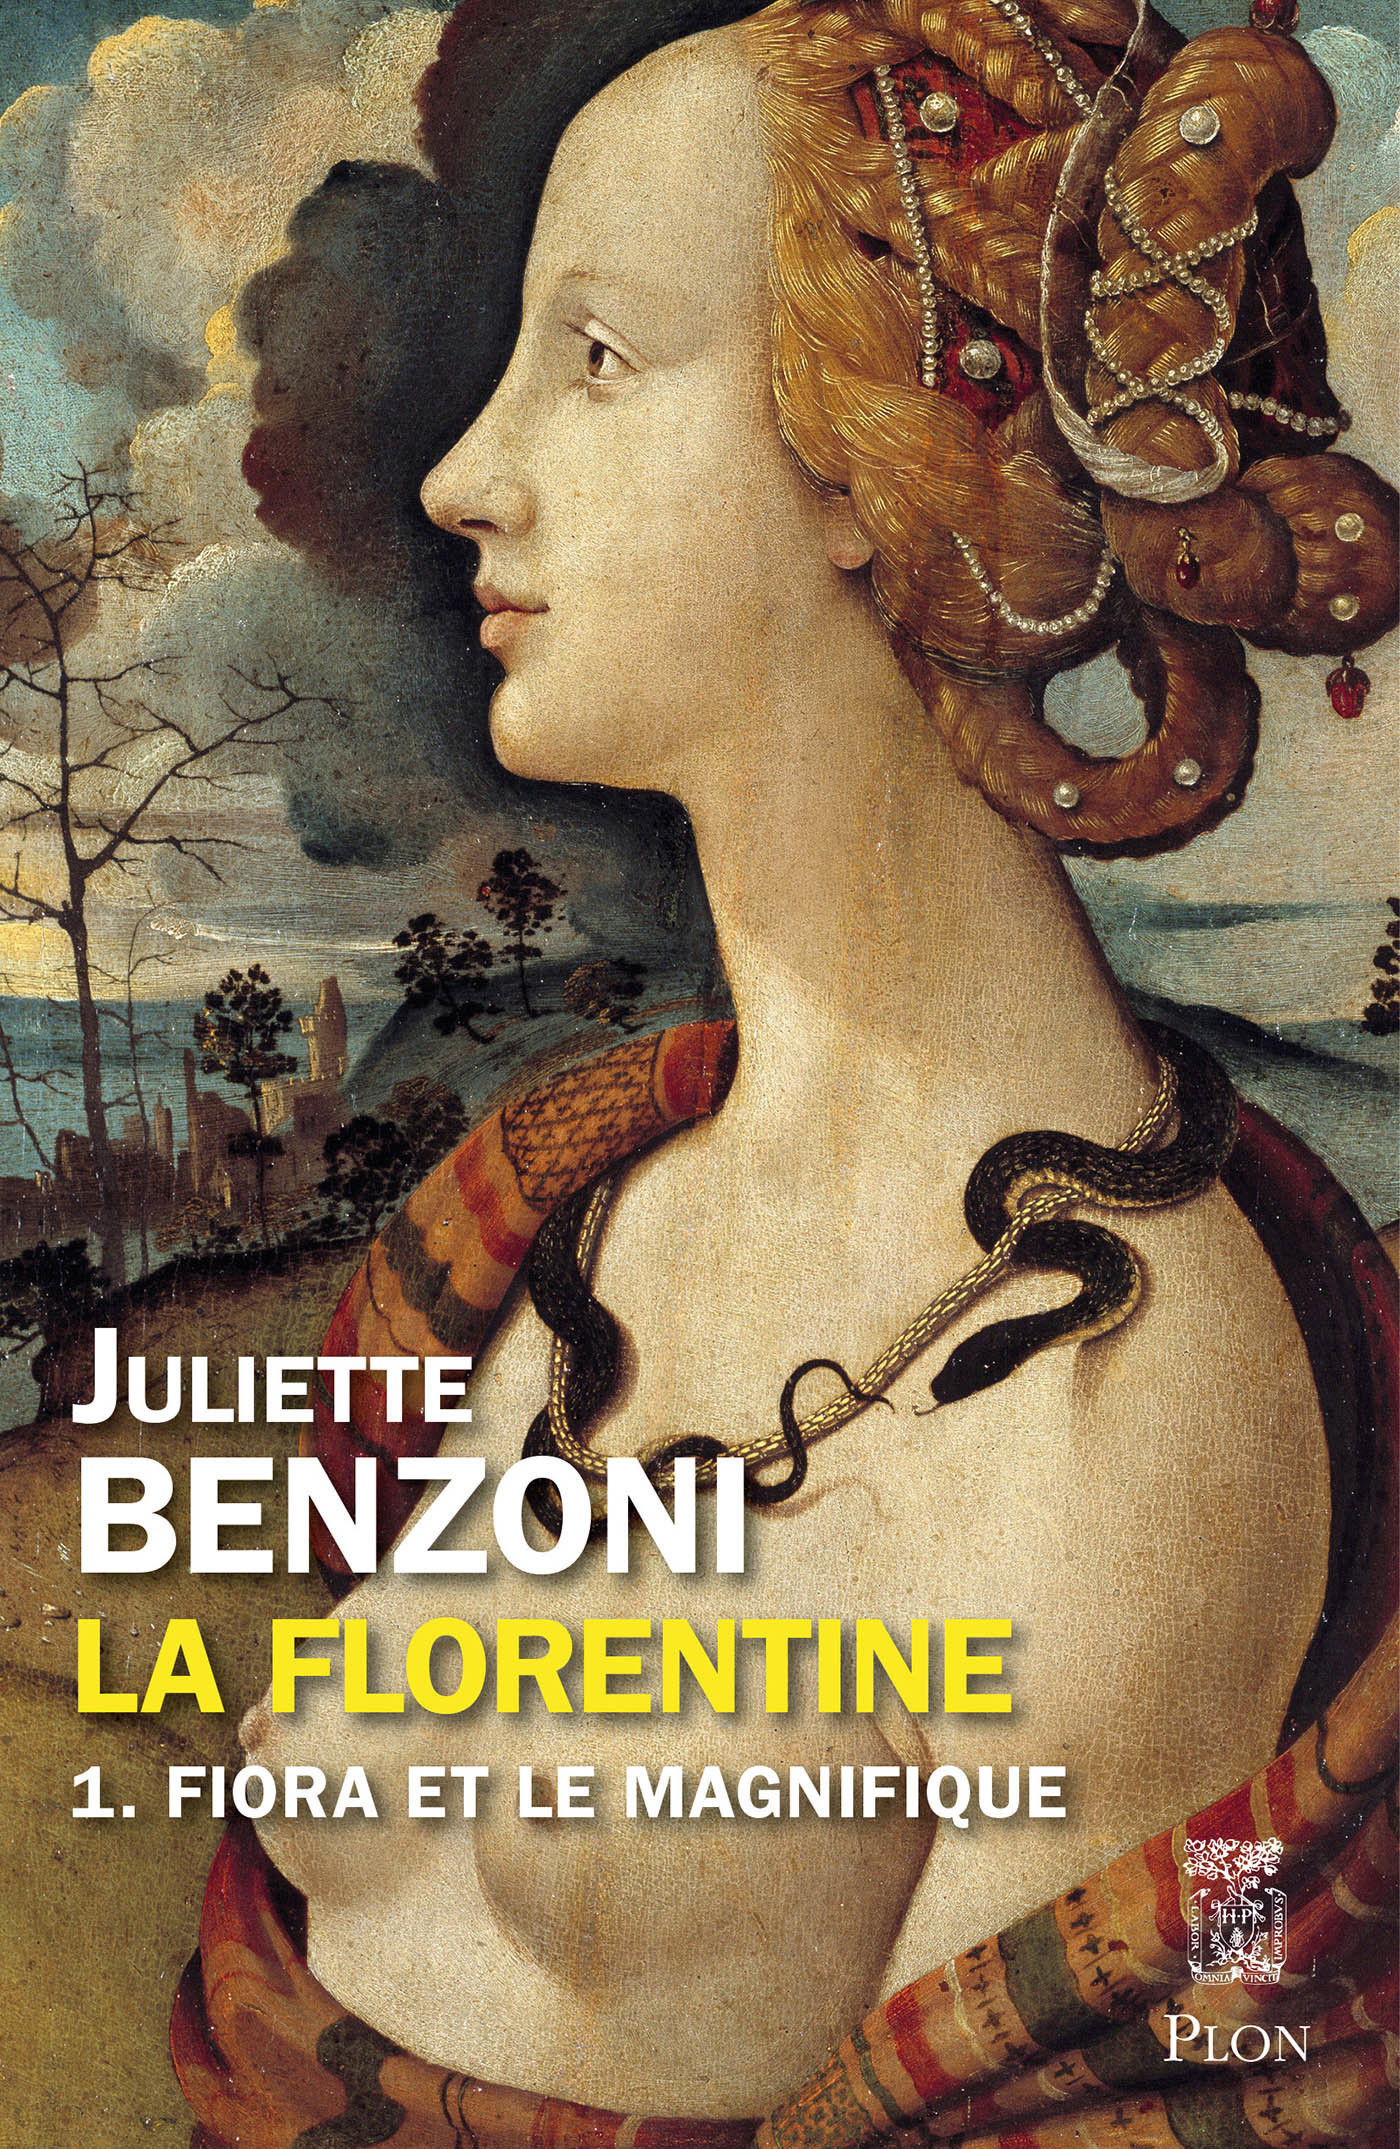 Afficher "La Florentine tome 1 - Fiora et le magnifique"